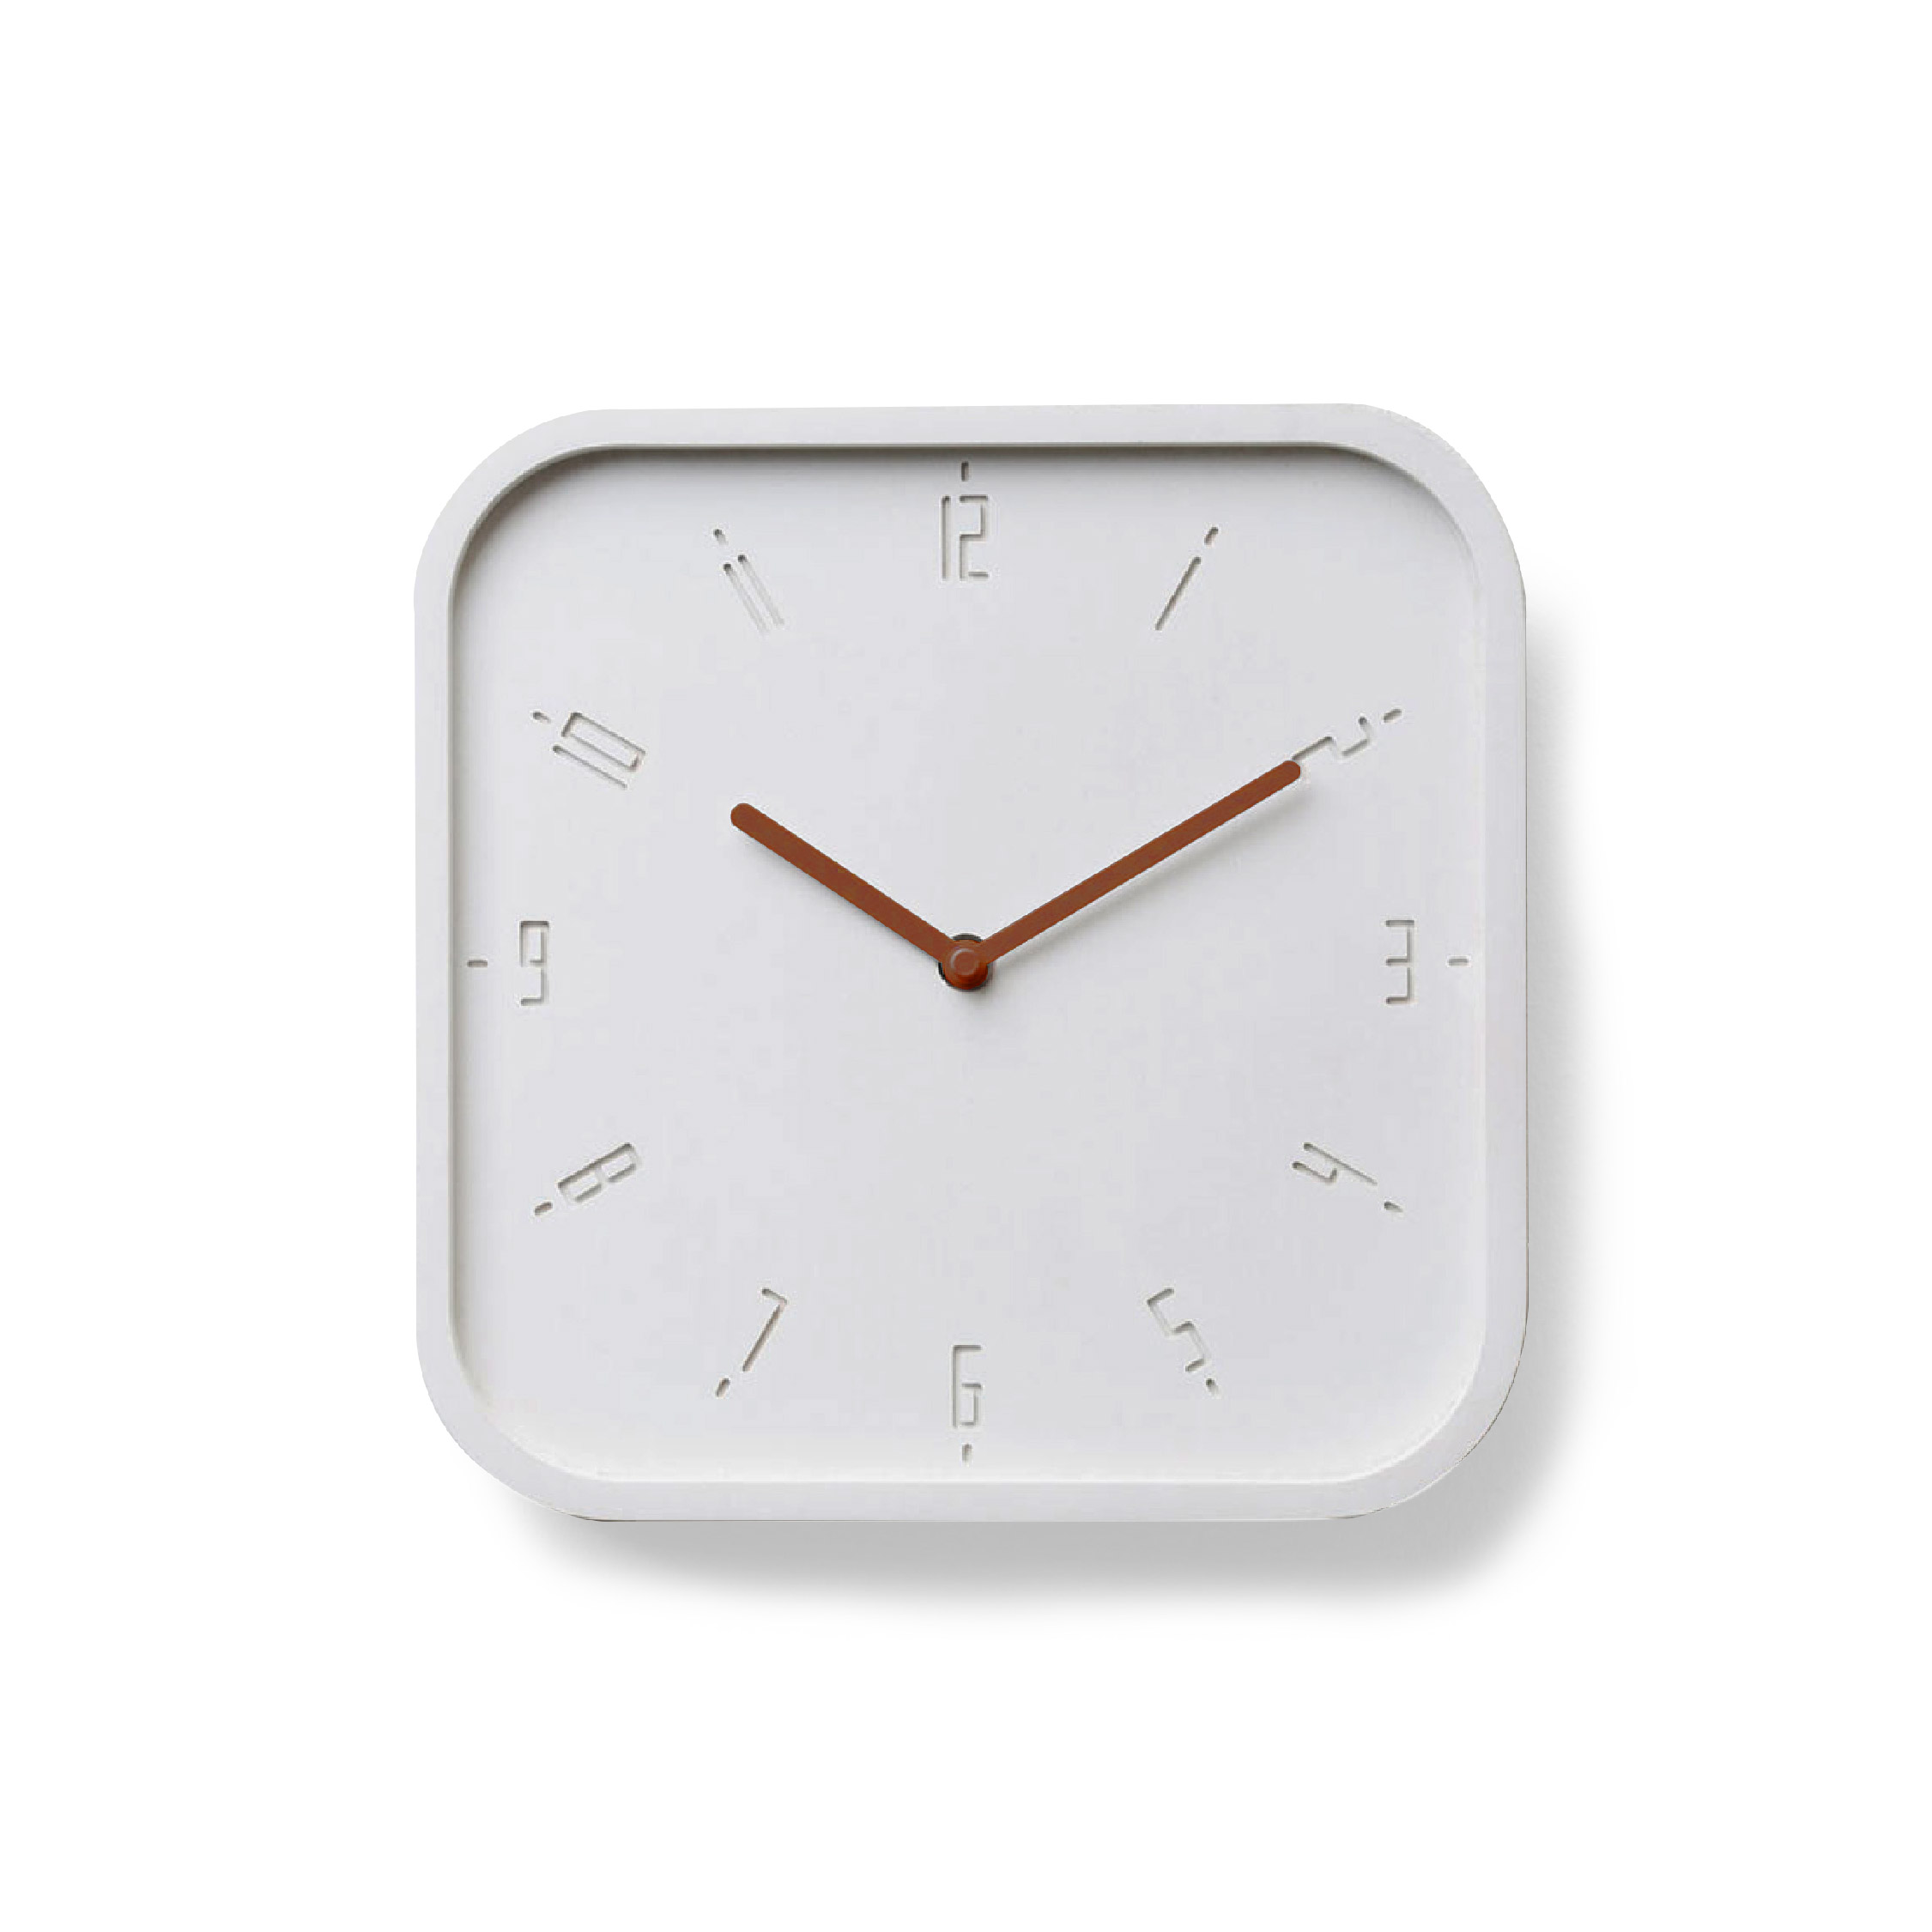 TIMY-S- White B.|Copper H. wall clock